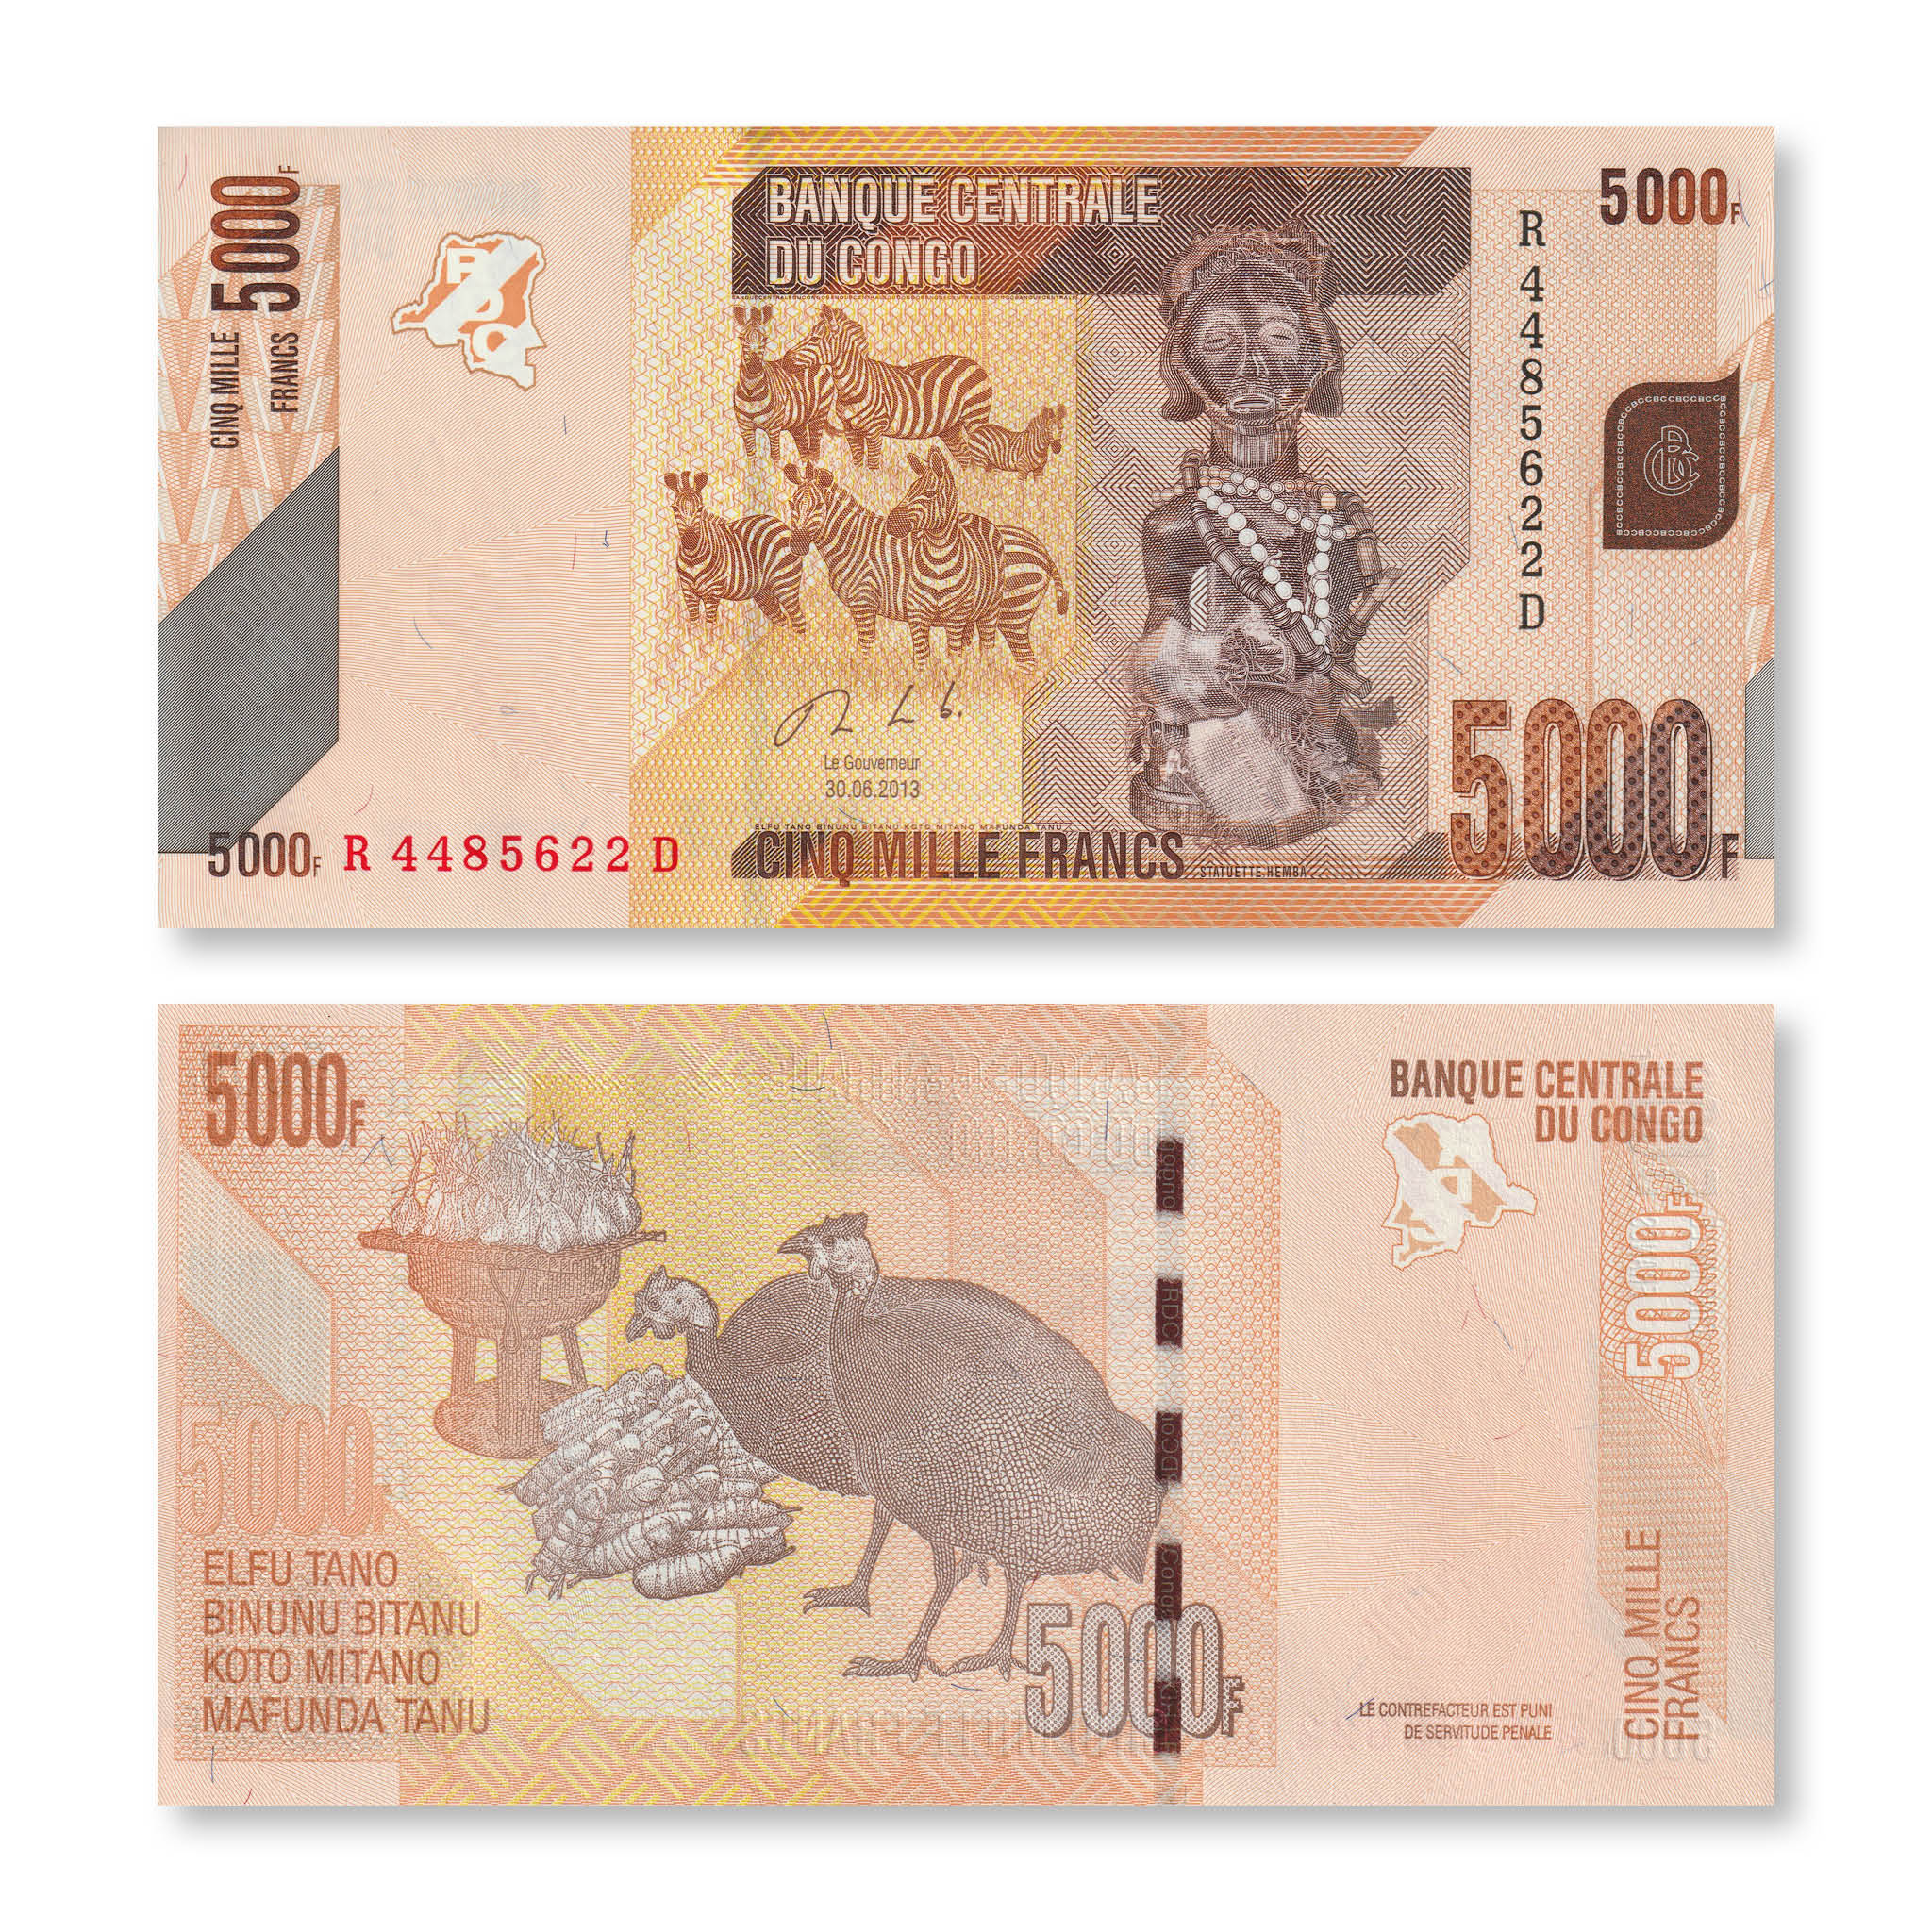 Congo Democratic Republic 5000 Francs, 2013, B324b, P102, UNC - Robert's World Money - World Banknotes